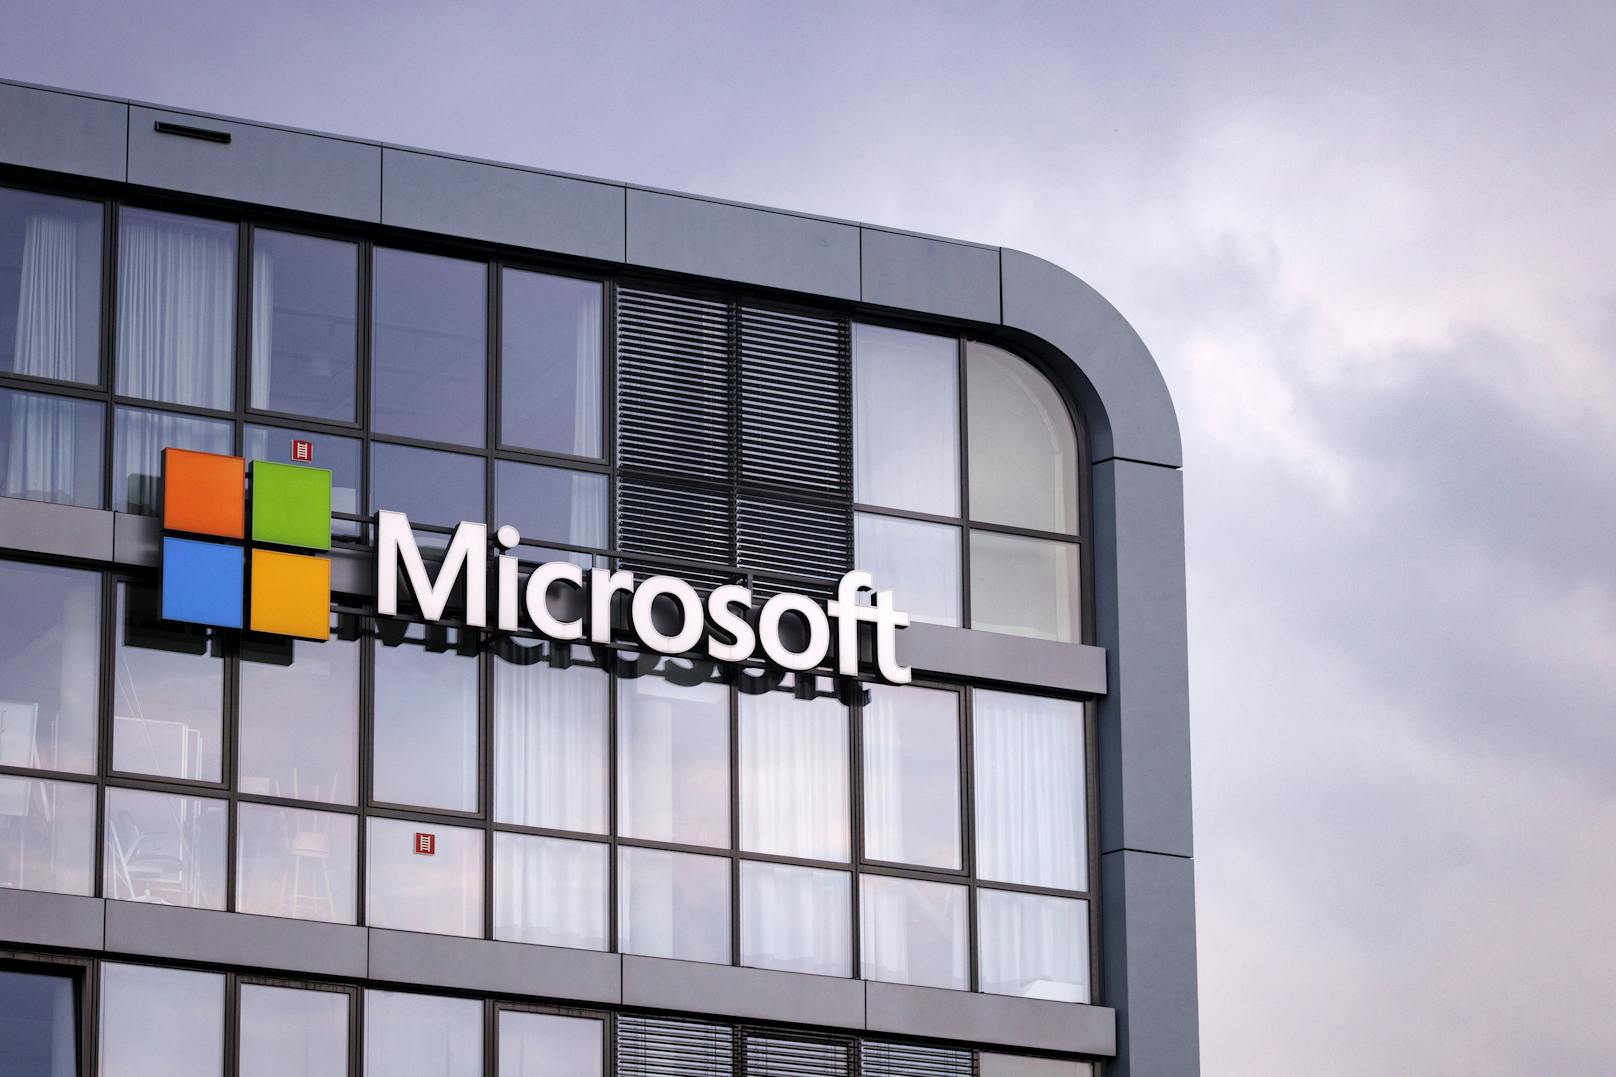 Kämpft mit großen Problemen: Der Microsoft-Konzern teilte weltweite Systemausfälle bei einigen seiner Dienste mit.